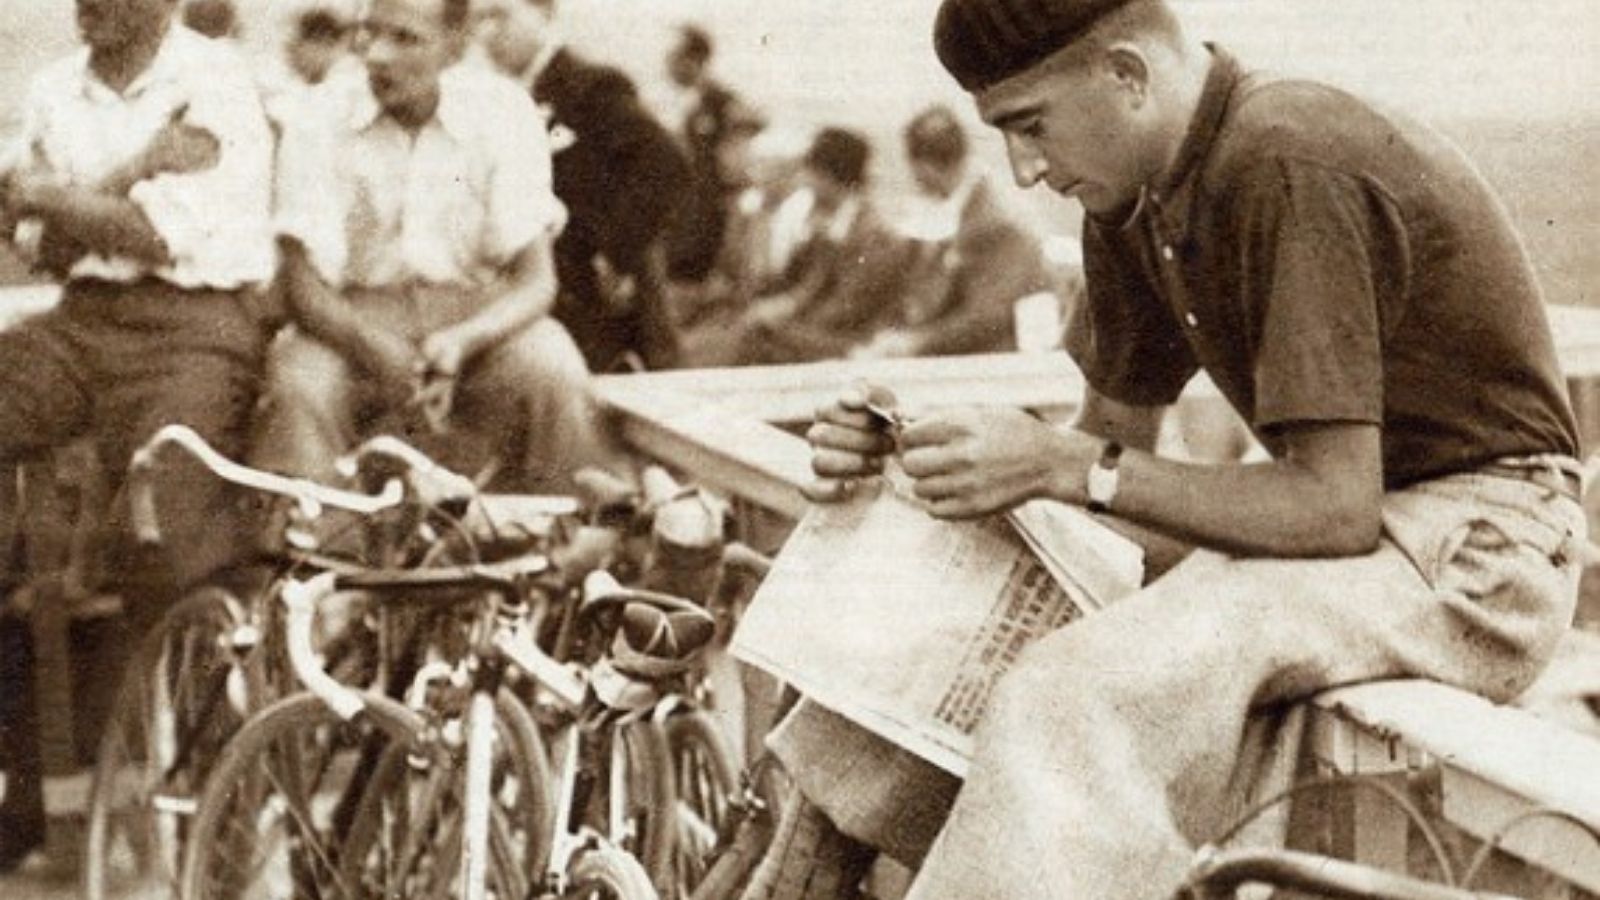 Antonin Magne Tour de France winner 1931 and 1934